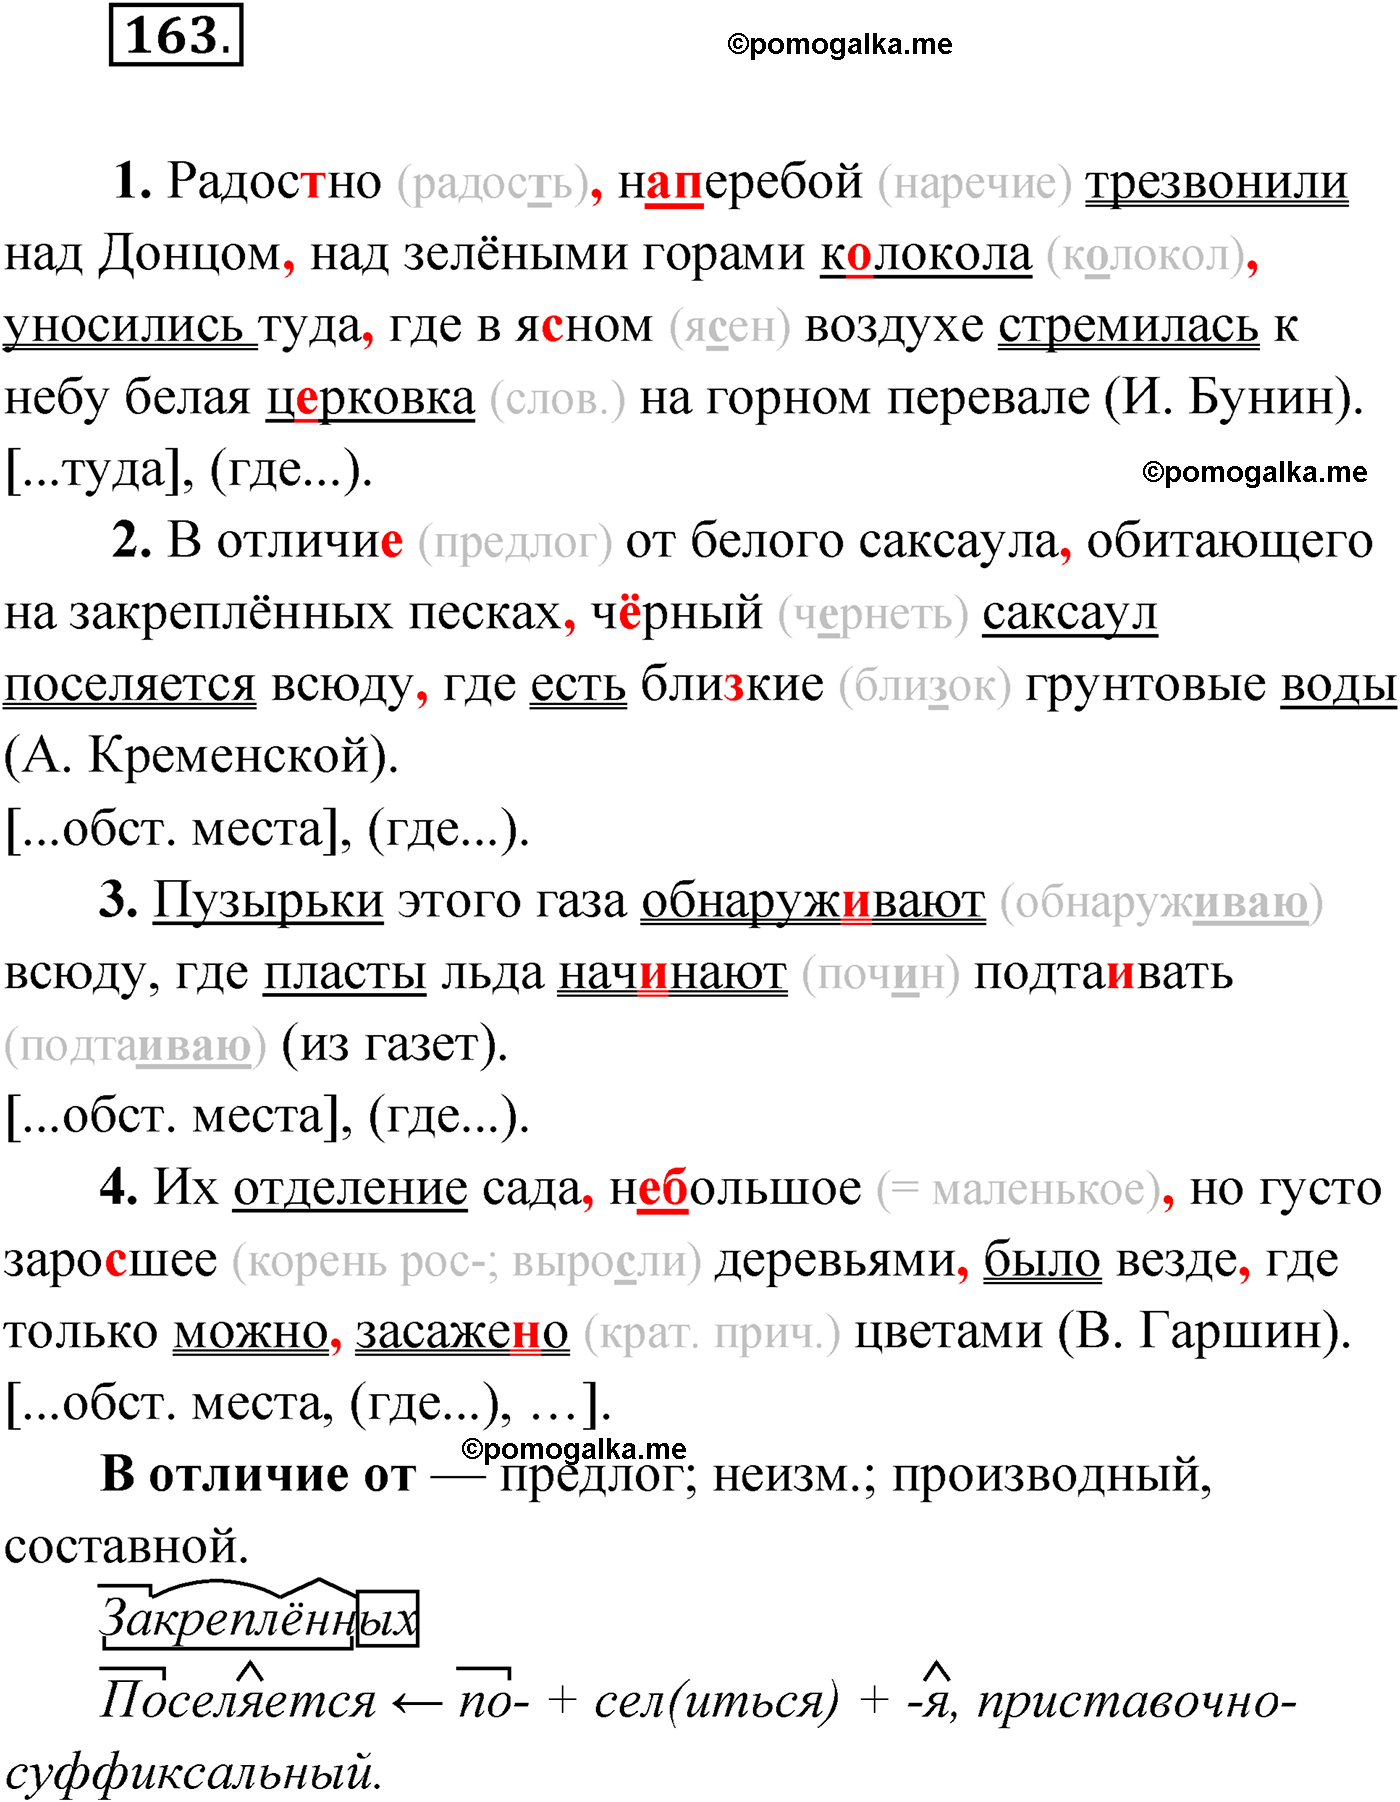 упражнение №163 русский язык 9 класс Мурина 2019 год